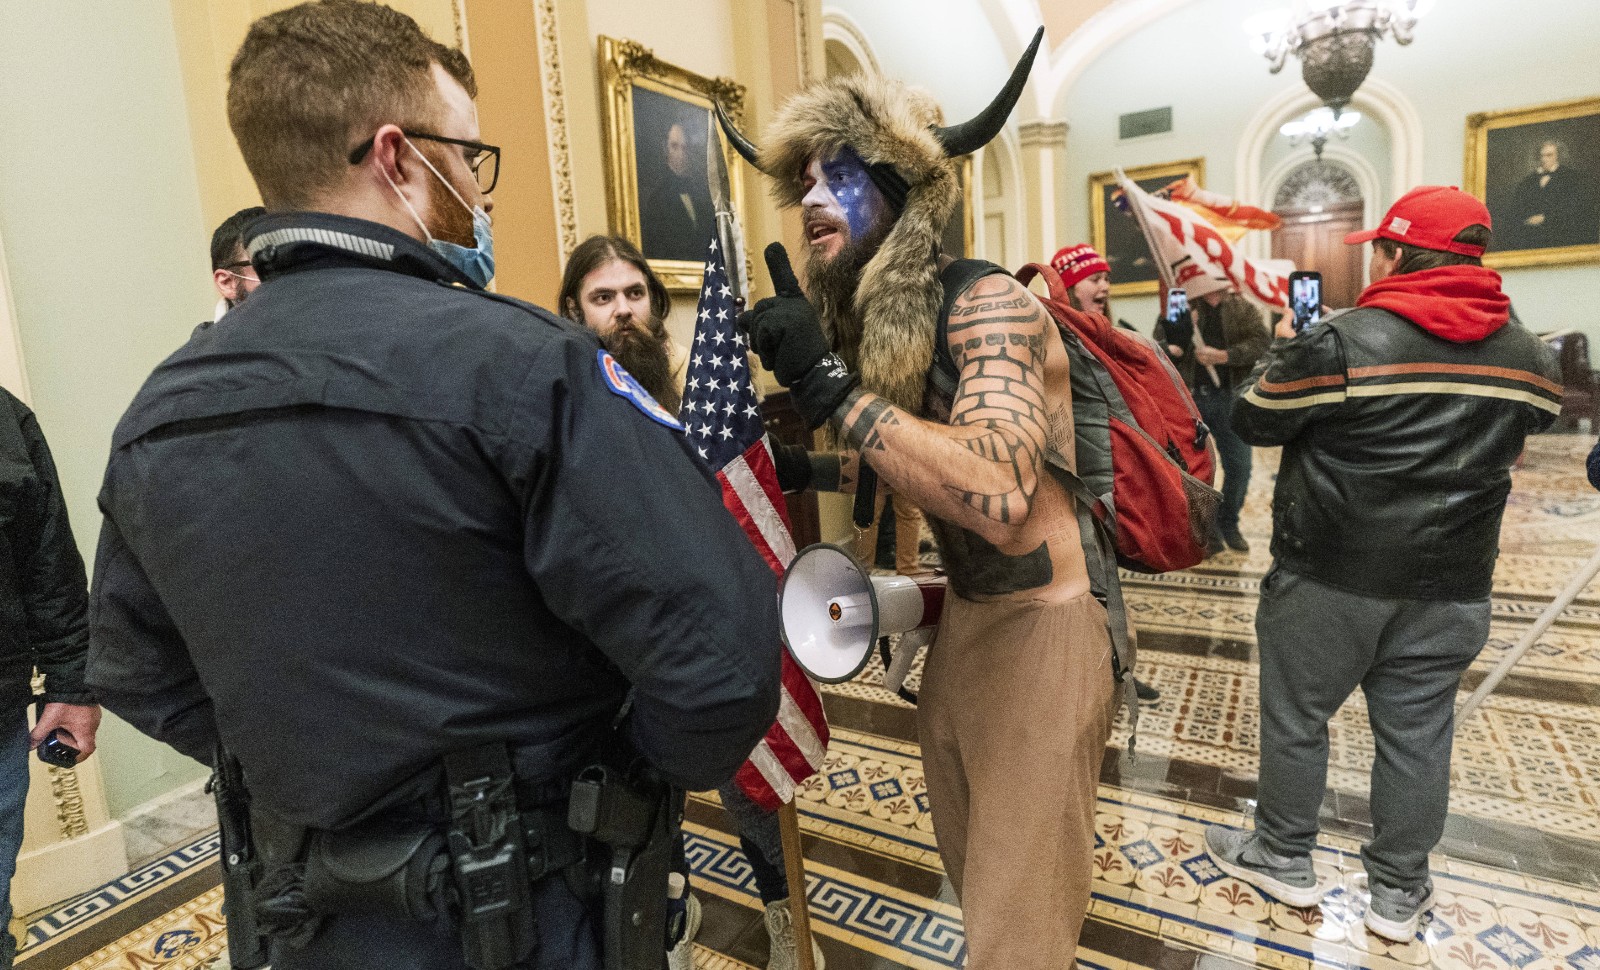 Des partisans radicaux de Donald Trump, entrés dans le Capitole, s'adressent aux policiers le 6 janvier 2021 à Washington © Manuel Balce Ceneta/AP/SIPA Numéro de reportage: AP22528058_000027